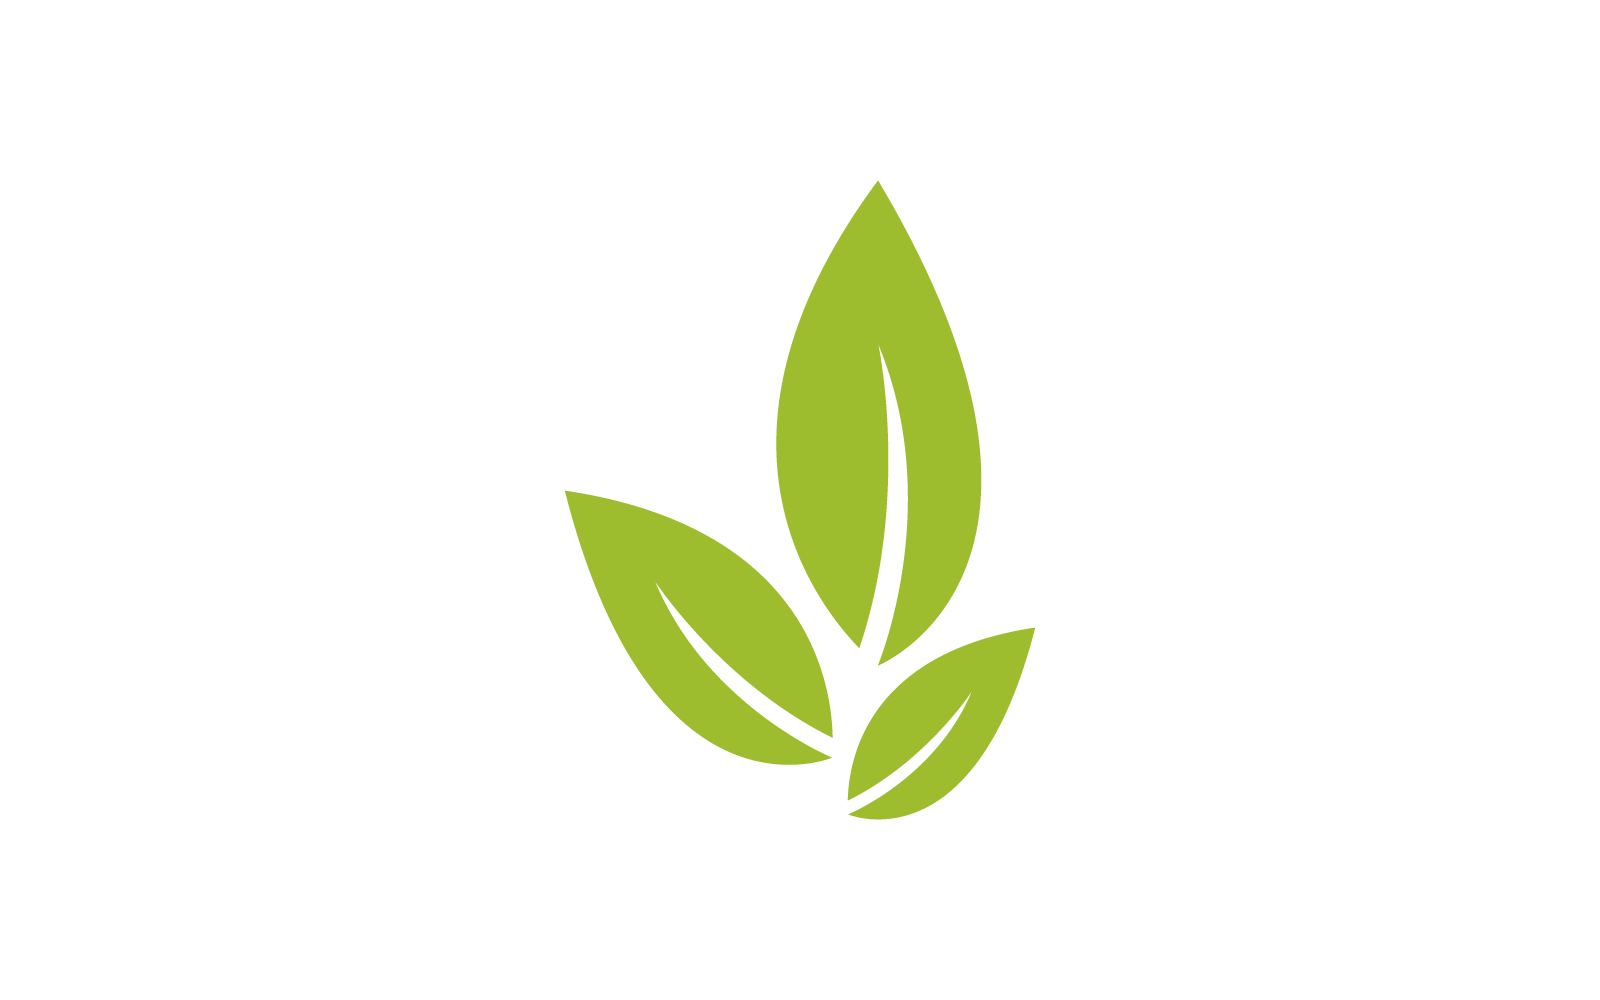 Green leaf illustration nature design